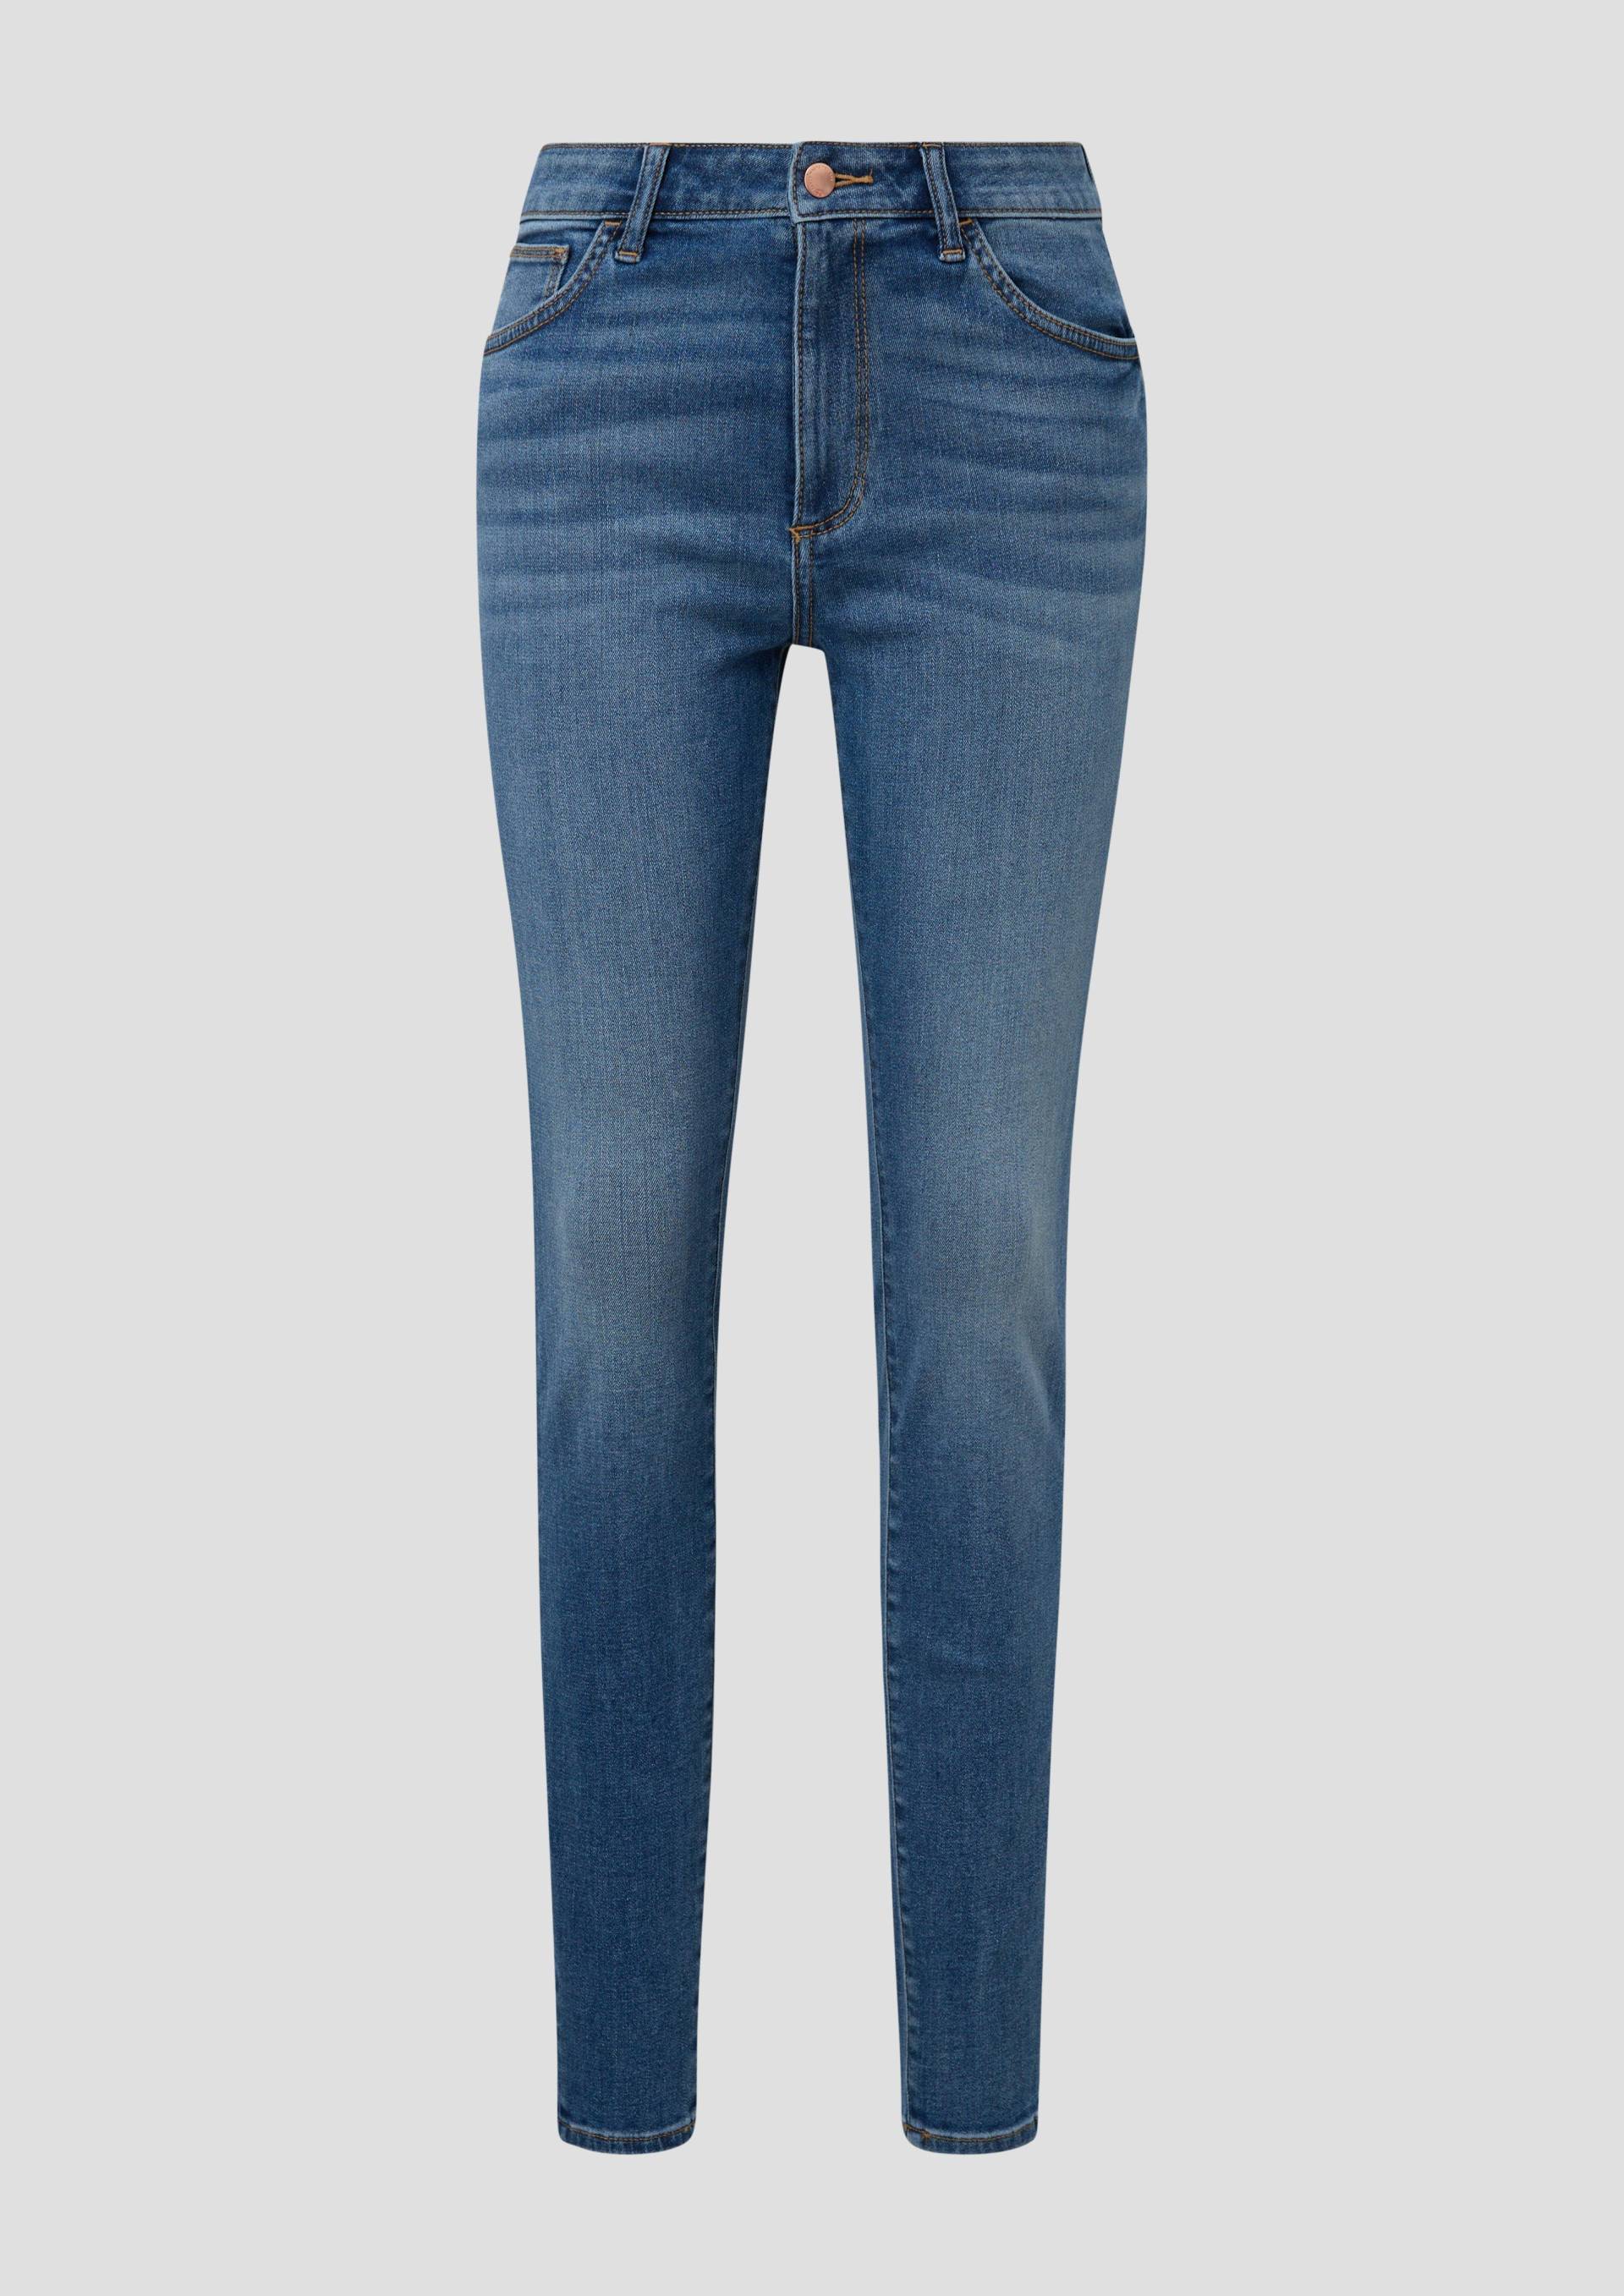 QS - Jeans / Super Skinny Fit / High Rise / Skinny leg, Damen, blau von QS